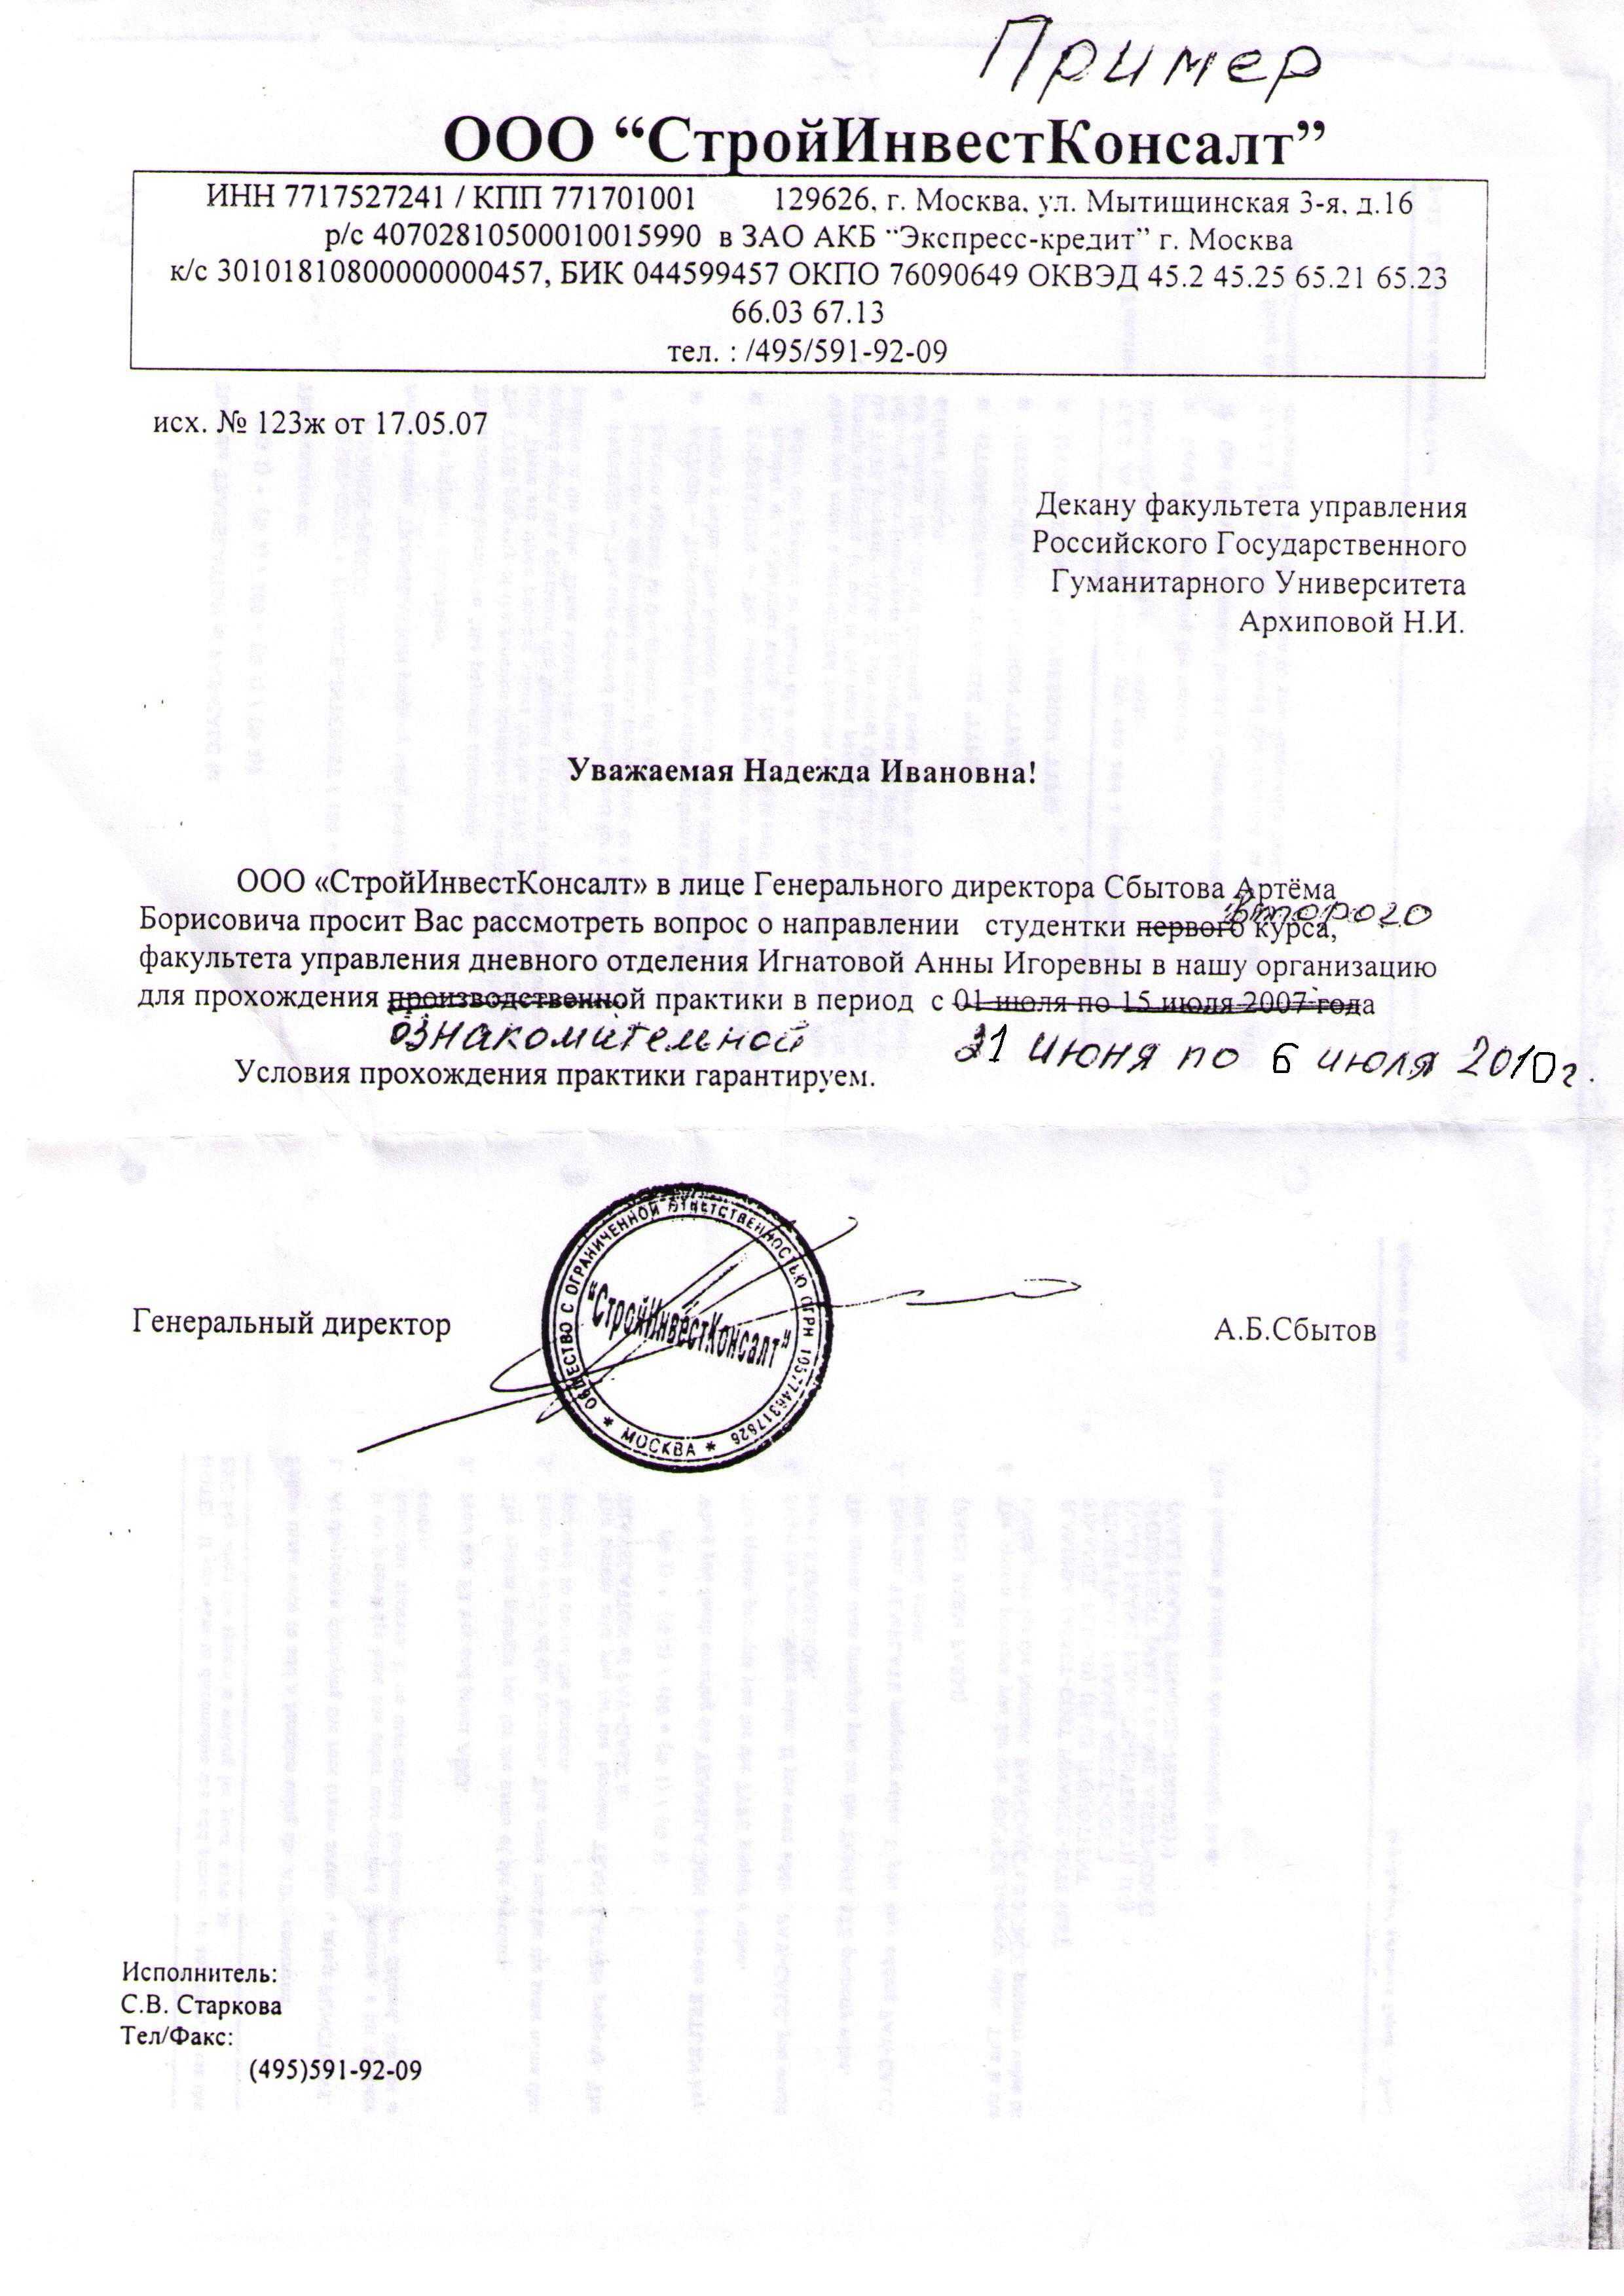 Пример оформления гарантийного письма о выполнении работ по договору